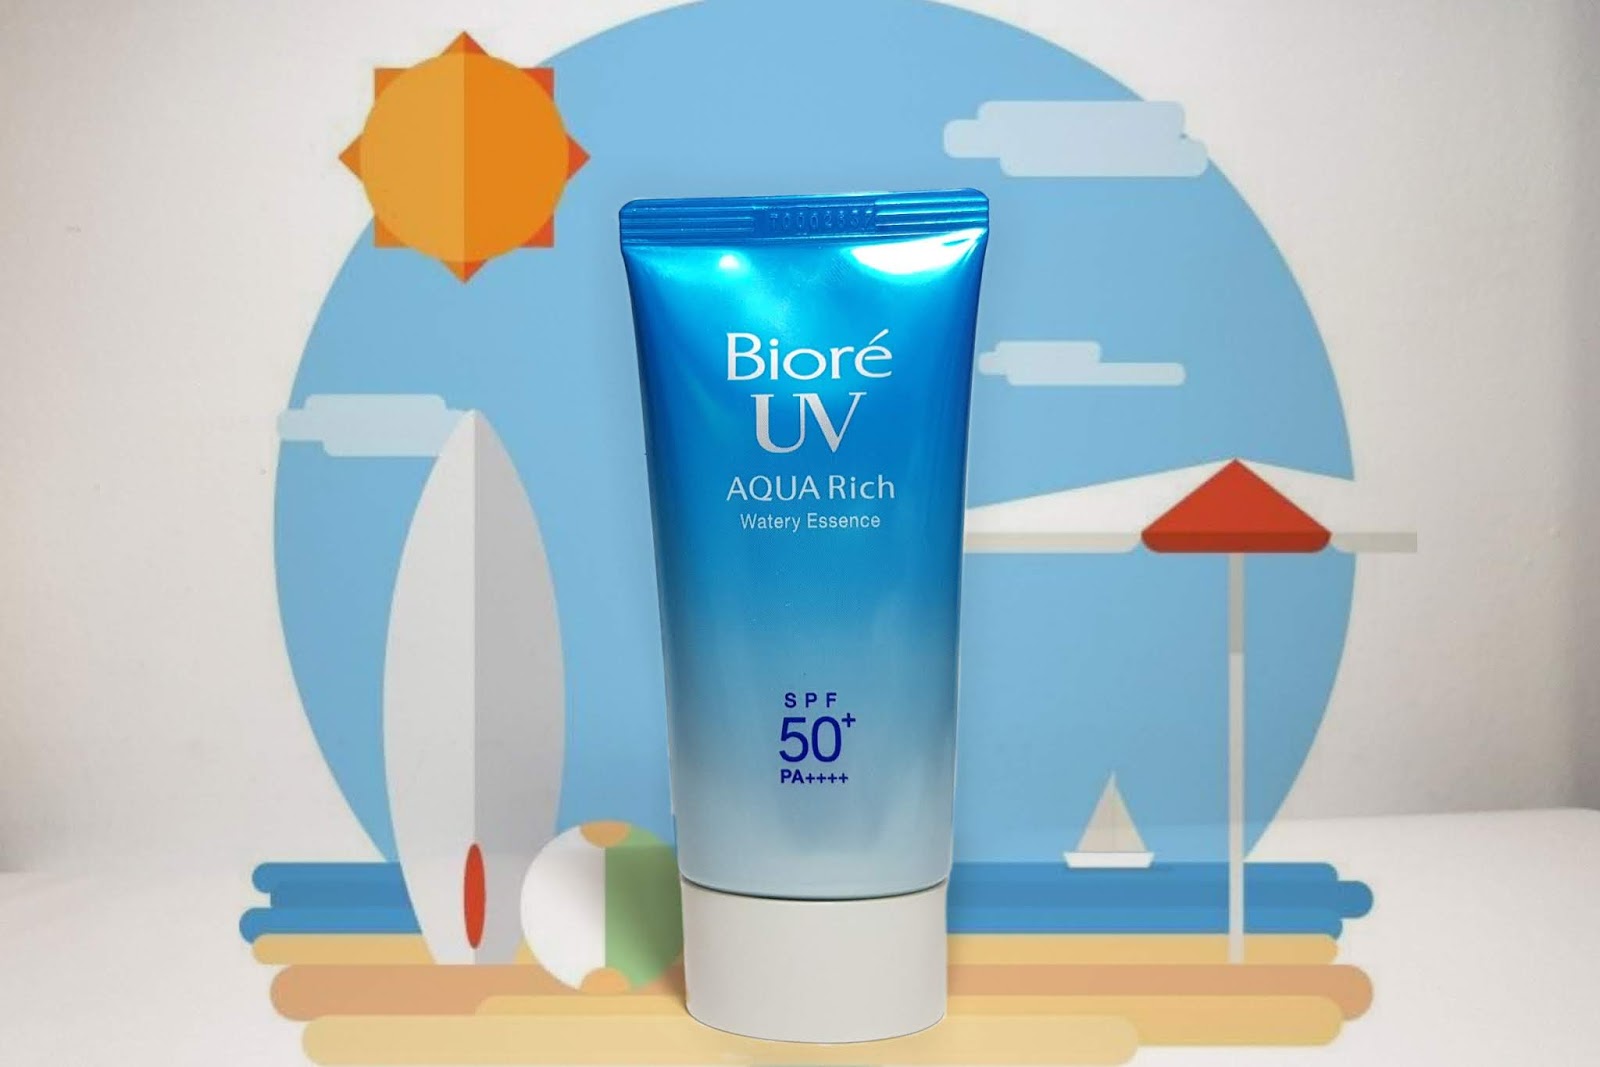 Biore uv aqua rich spf. Biore UV Aqua Rich SPF 50. Biore - UV Aqua Rich spf50+ pa+++. Biore UV spf50+ до жирной кожи. Biore Aqua Rich Swatch.